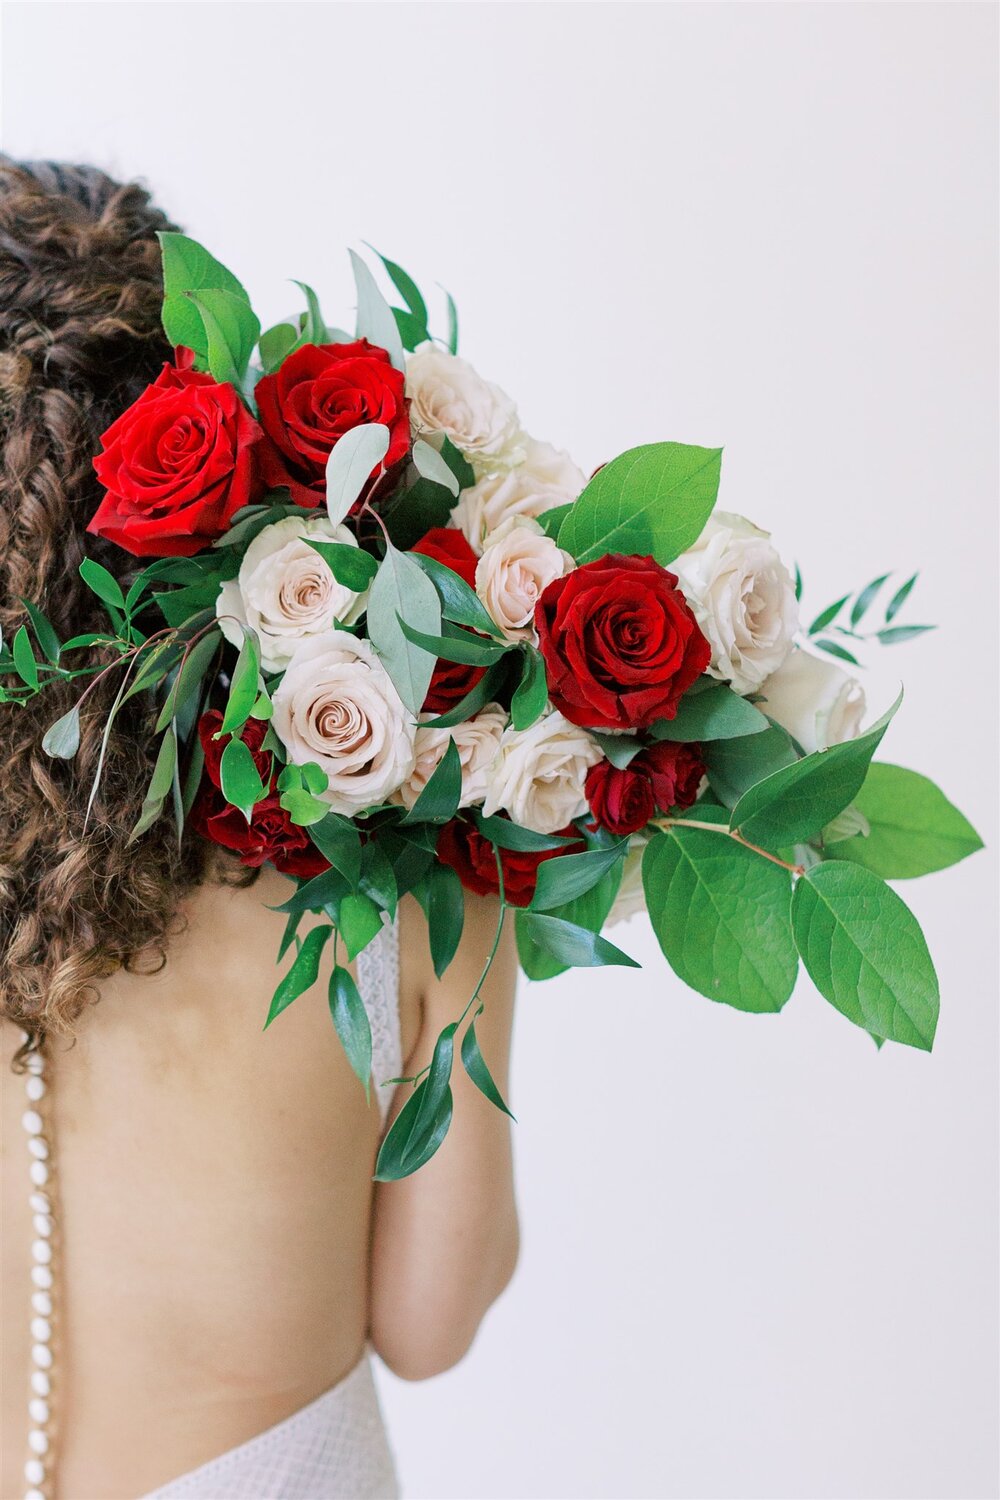 Flower_Lab-St.-Louis-Budget-Wedding-Florist-Burgundy-Garden-Bridal-Bouquet.jpg